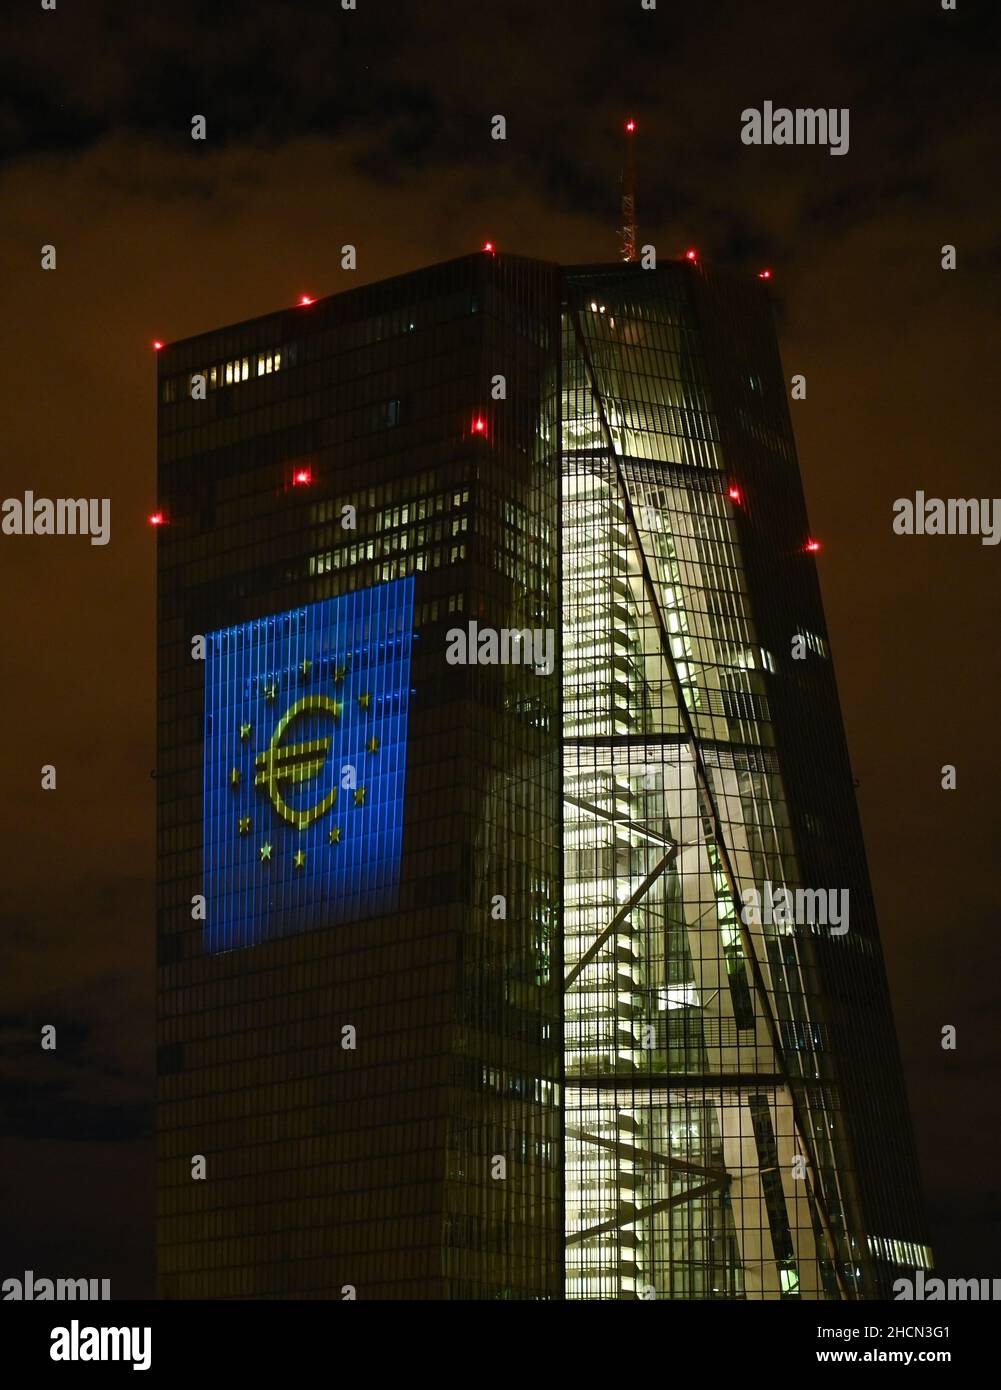 30 décembre 2021, Hessen, Francfort-sur-le-main : lors d'un essai, le symbole de l'euro est projeté sur la façade sud du siège de la Banque centrale européenne (BCE) dans l'est de Francfort.Il y a 20 ans, à la Saint-Sylvestre, la monnaie européenne commune, l'euro, a été introduite dans douze pays de l'UE.Pour l'Allemagne, cela signifiait dire Au revoir au D-Mark.Du 31 décembre 2021 au 9 janvier 2022, la façade de la BCE sera illuminée dans la soirée.Photo: Arne Dedert/dpa Banque D'Images